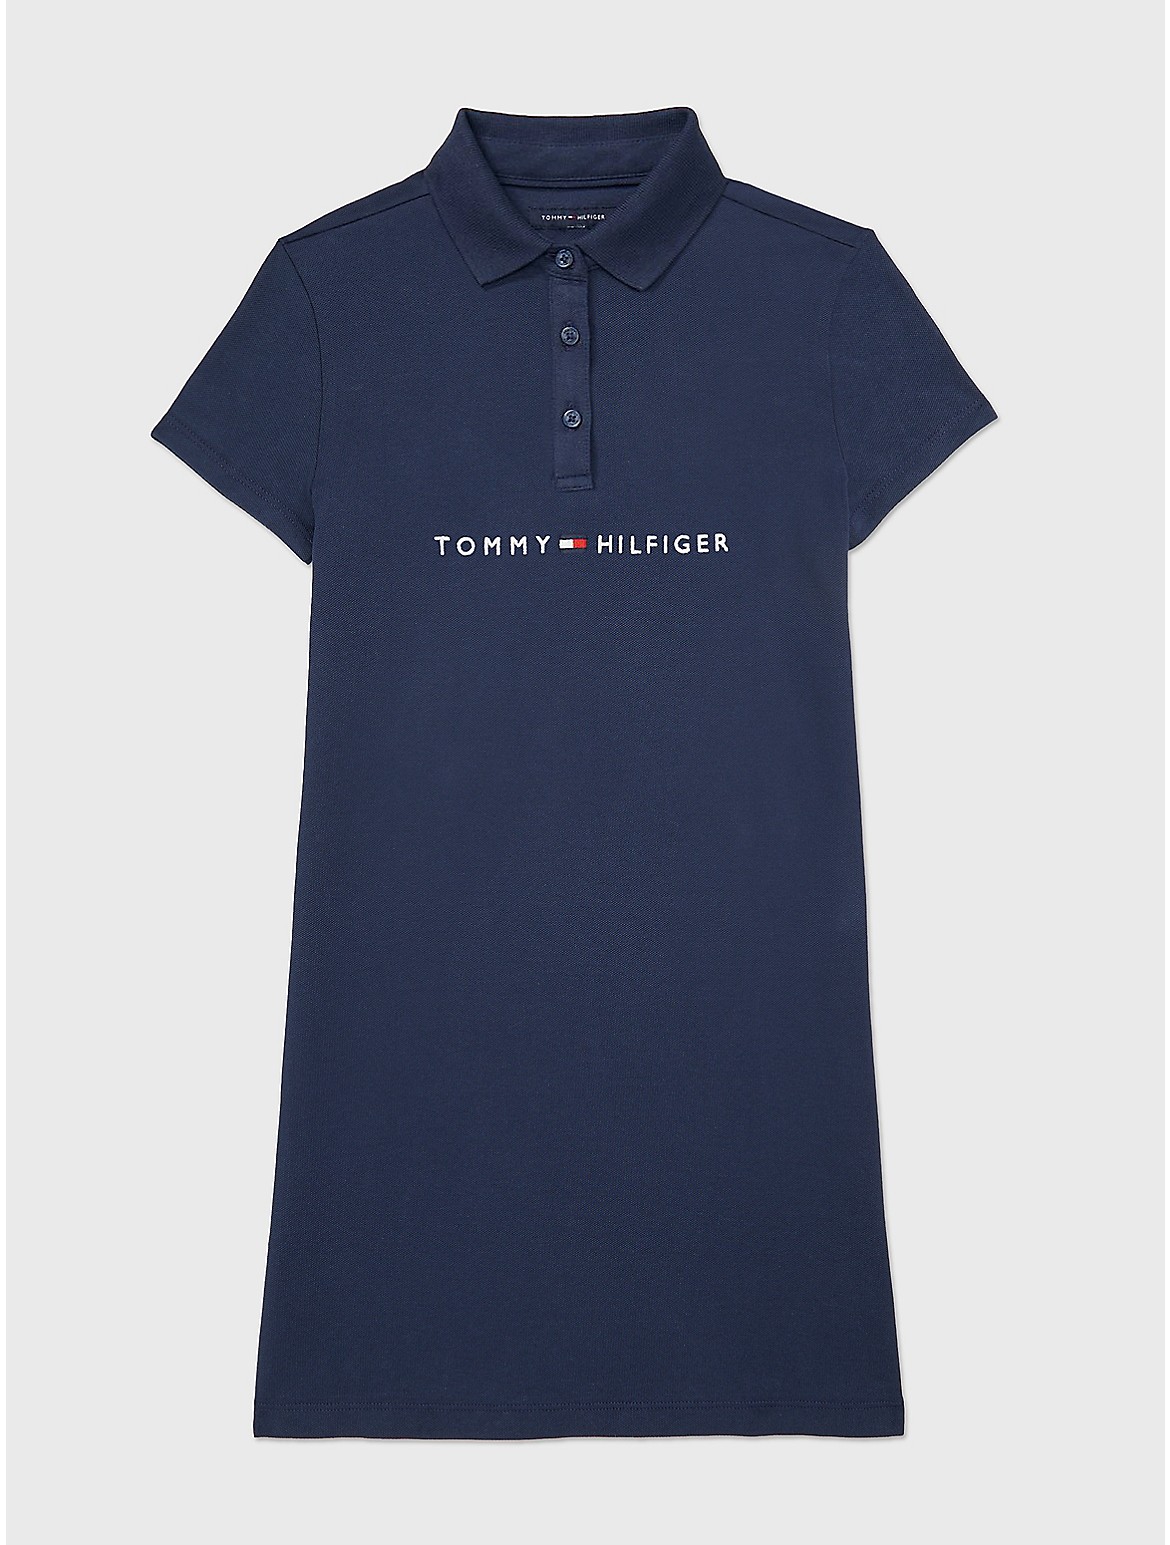 Tommy Hilfiger Girls' Kids' Embroidered Tommy Logo Dress - Blue - L